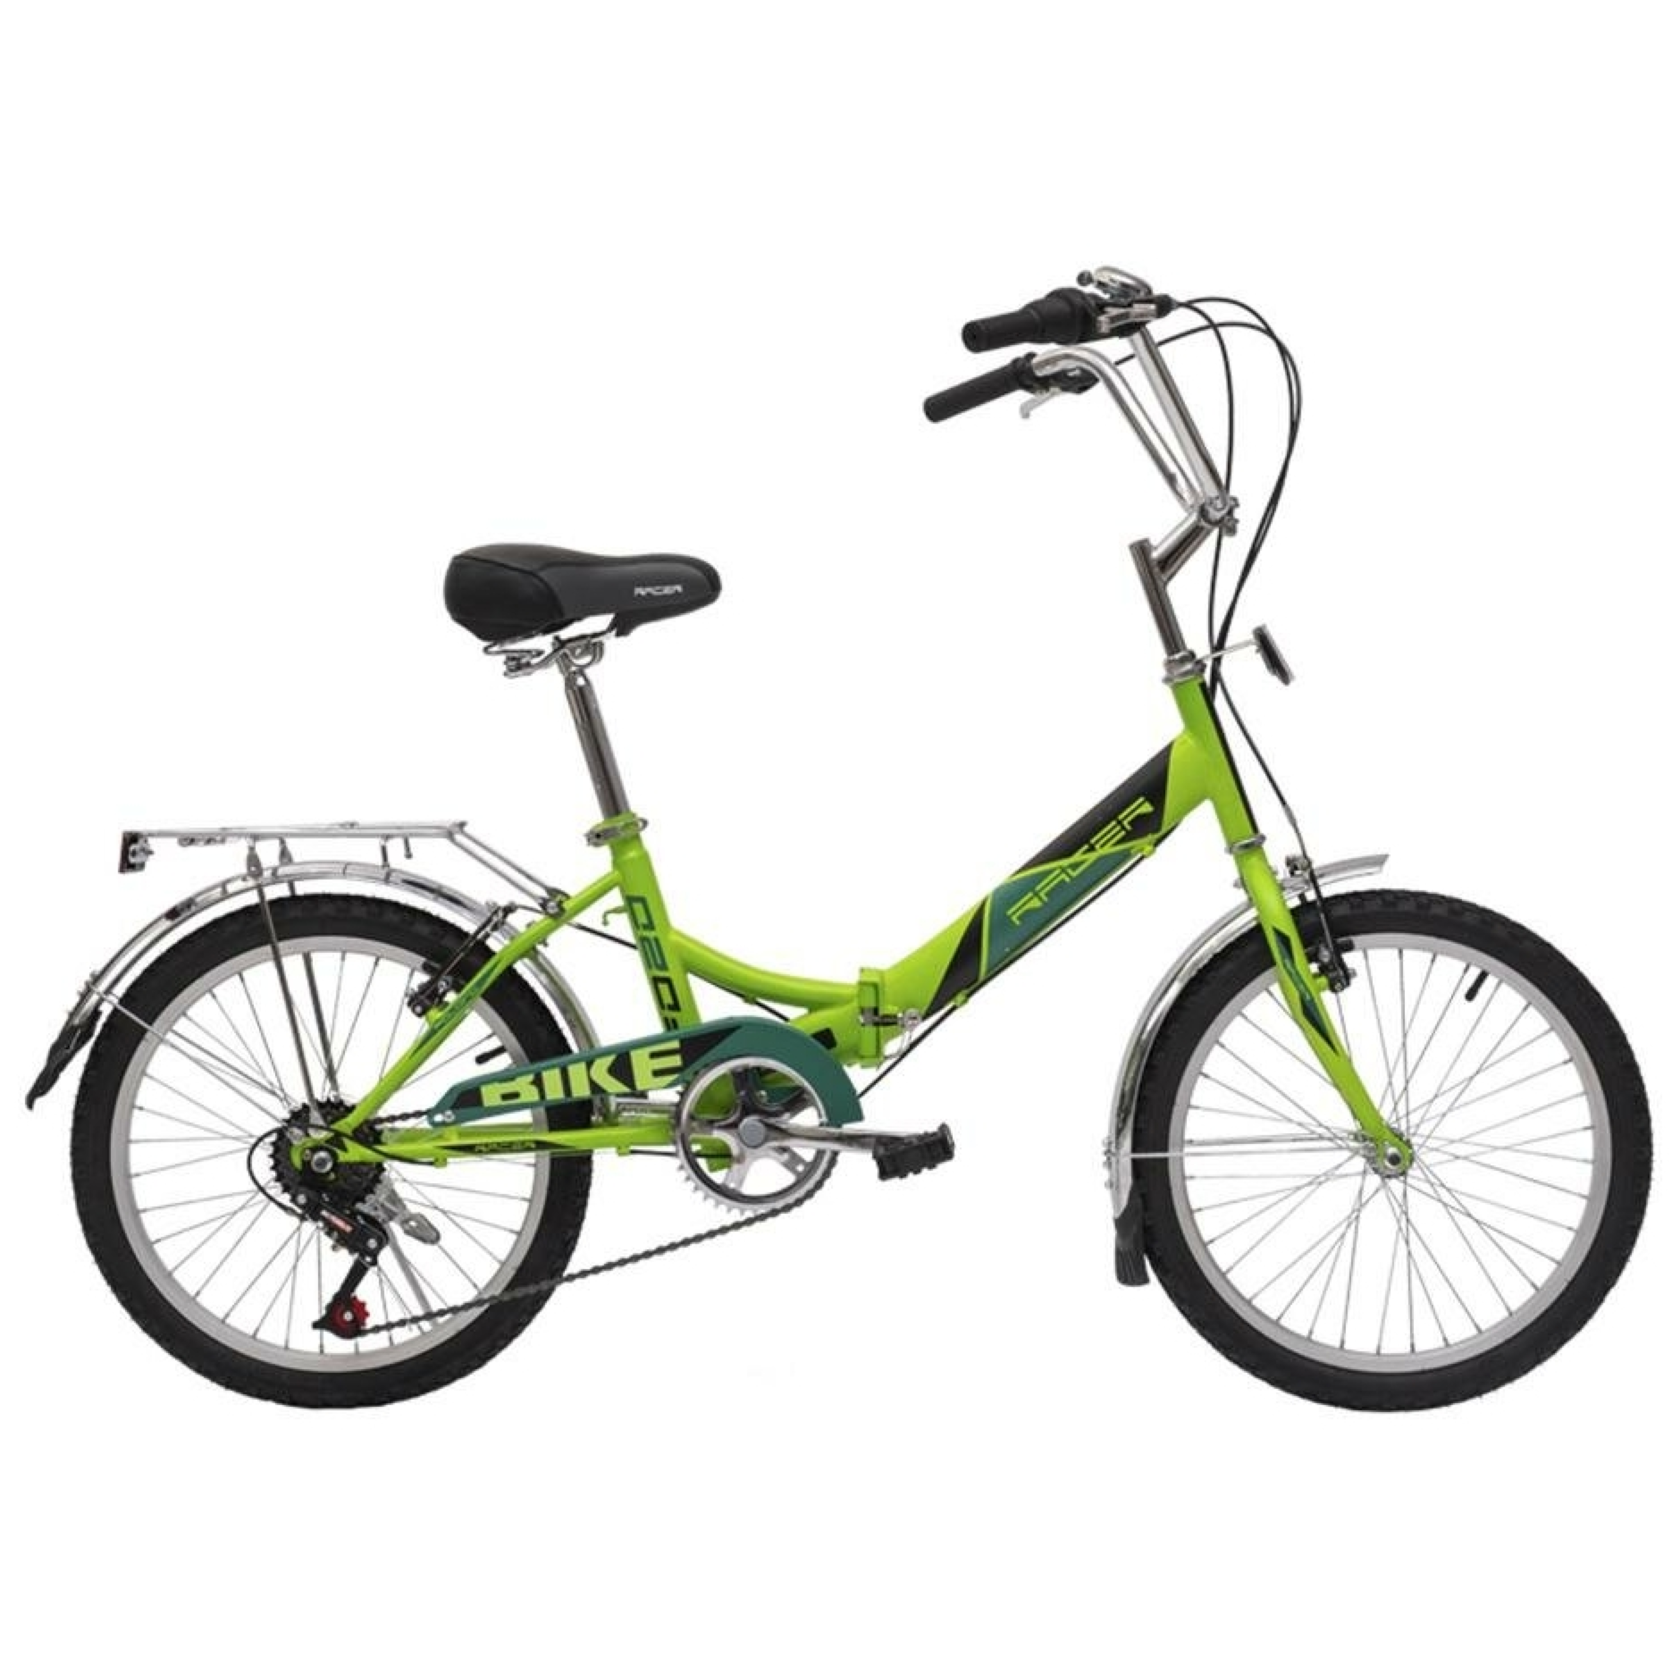 Складной велосипед купить 26. Велосипед Racer 24-6-30 зеленый. Велосипед рейсер 24 складной. Велосипед Racer Folding 24-1-20. 24"Велосипед Racer 24-1-20 складной, рама сталь, зеленый.